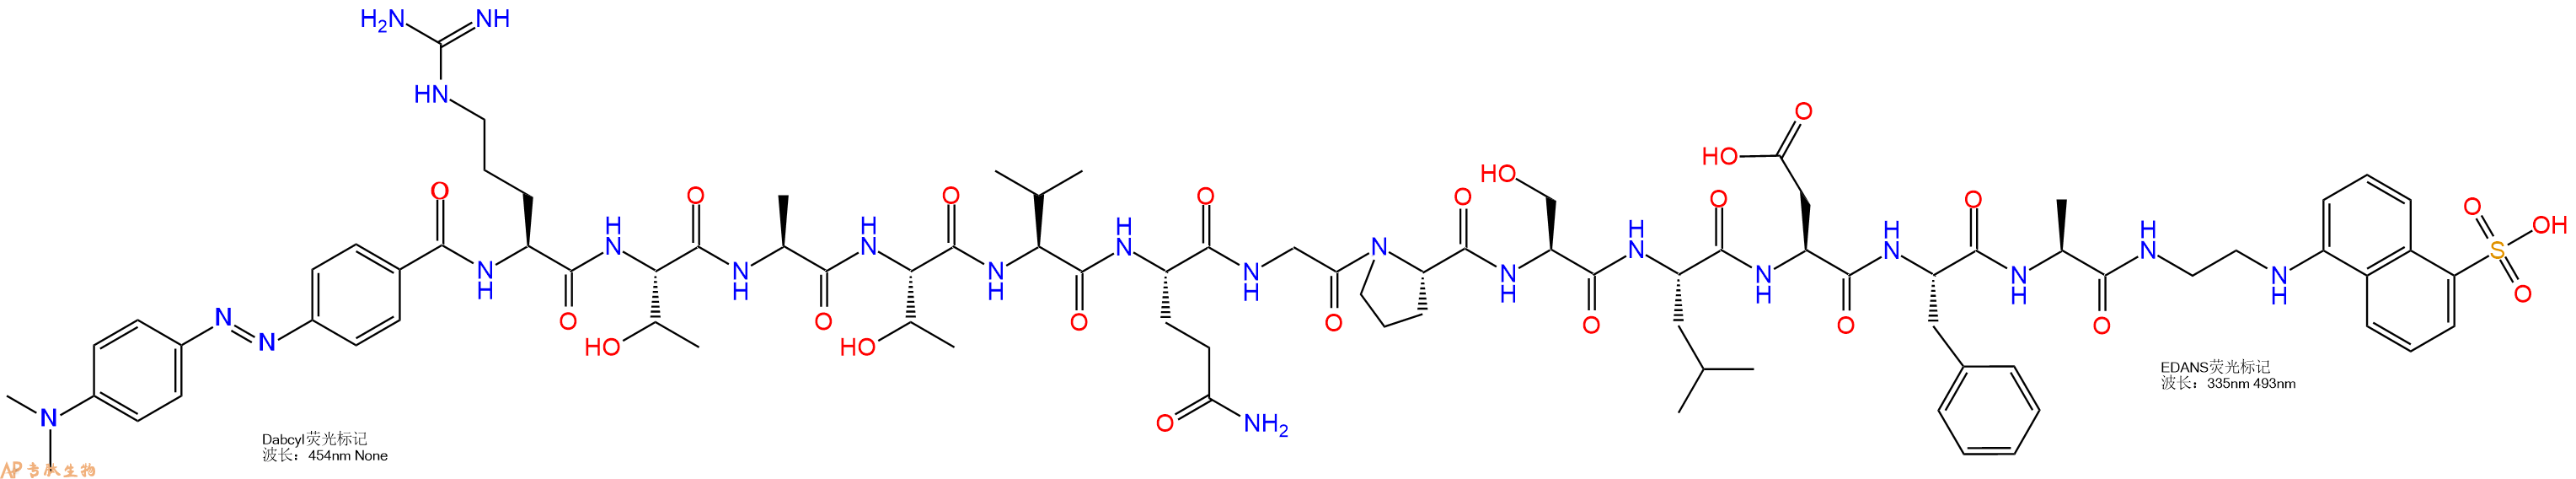 专肽生物产品DABCYL-Arg-Thr-Ala-Thr-Val-Gln-Gly-Pro-Ser-Leu-Asp